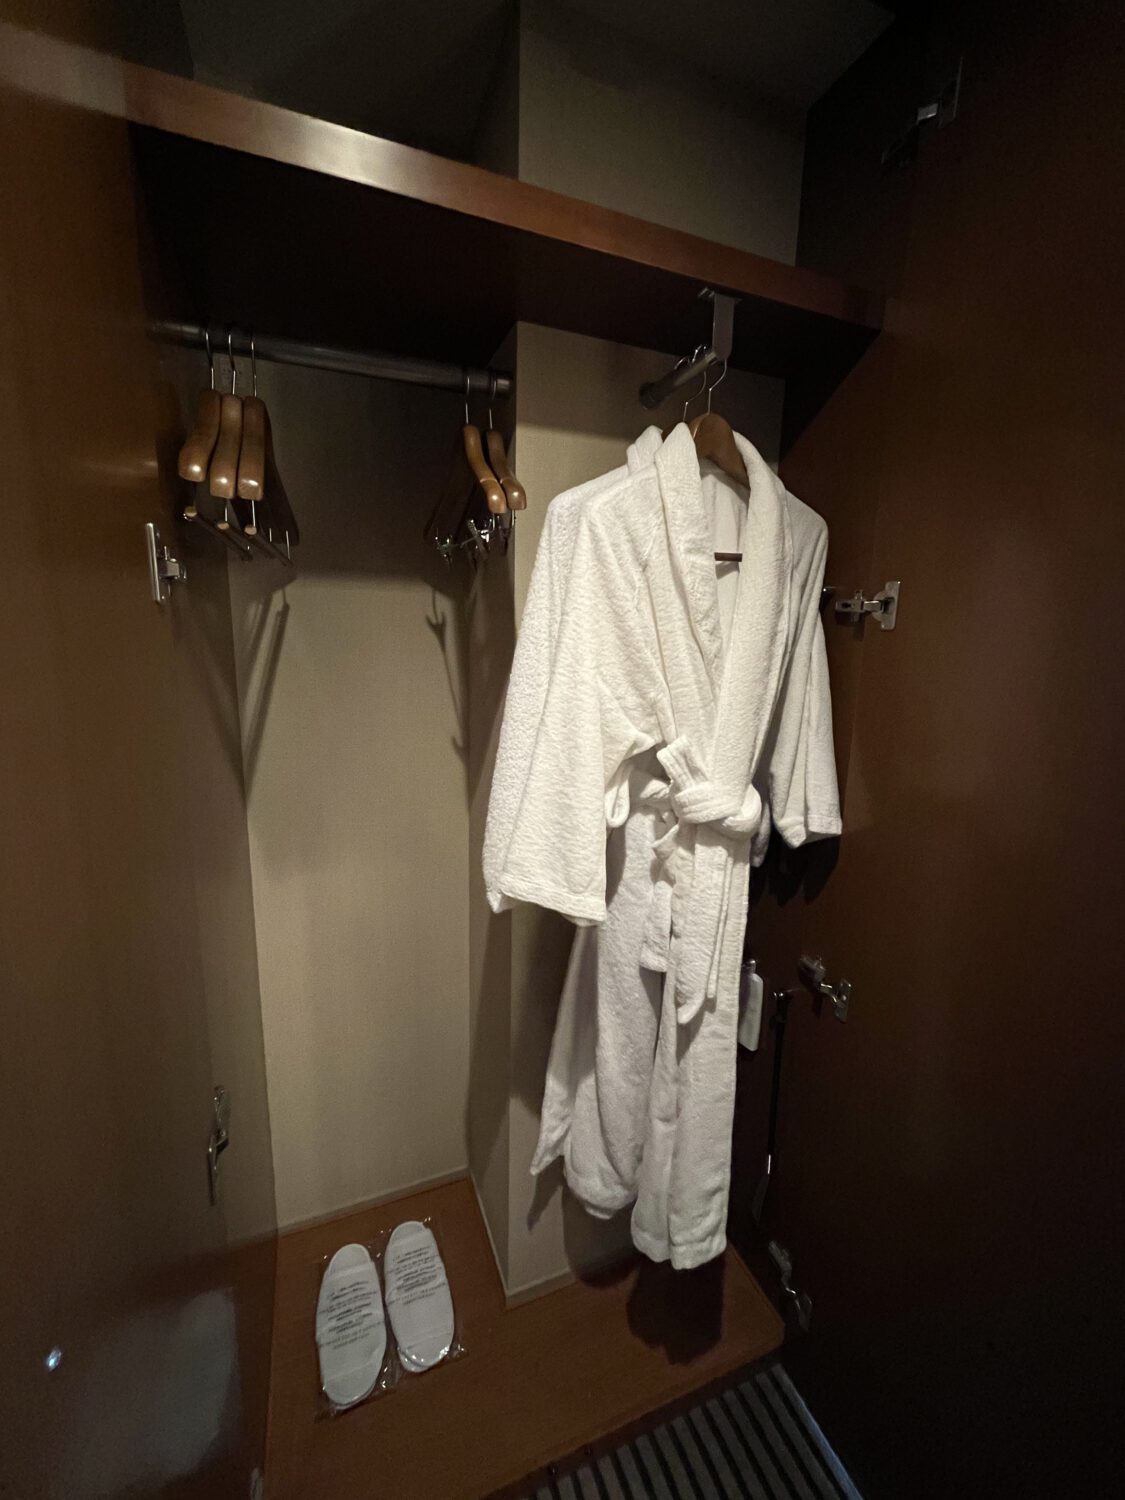 bathrobe and slippers in closet at Hyatt Regency Tokyo